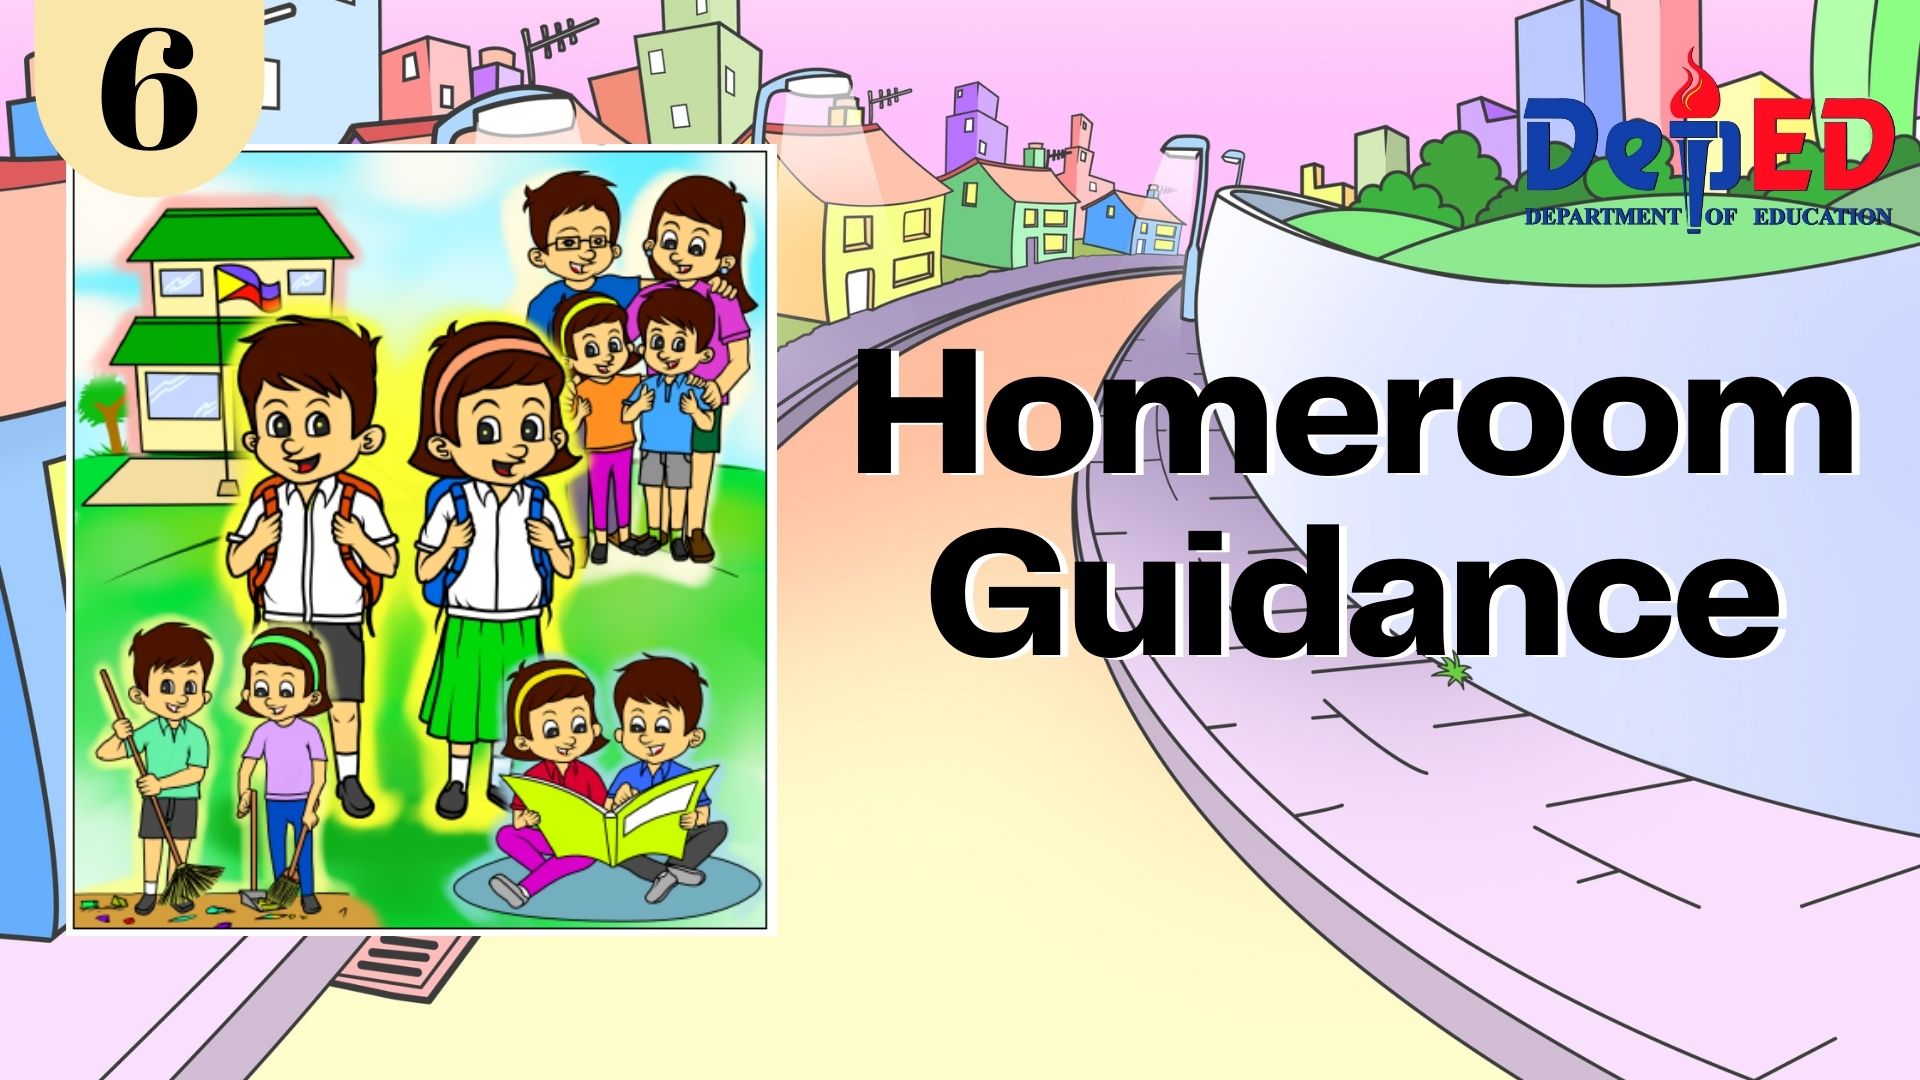 Quarter 2 Homeroom Guidance Grade 6 - ROBLES